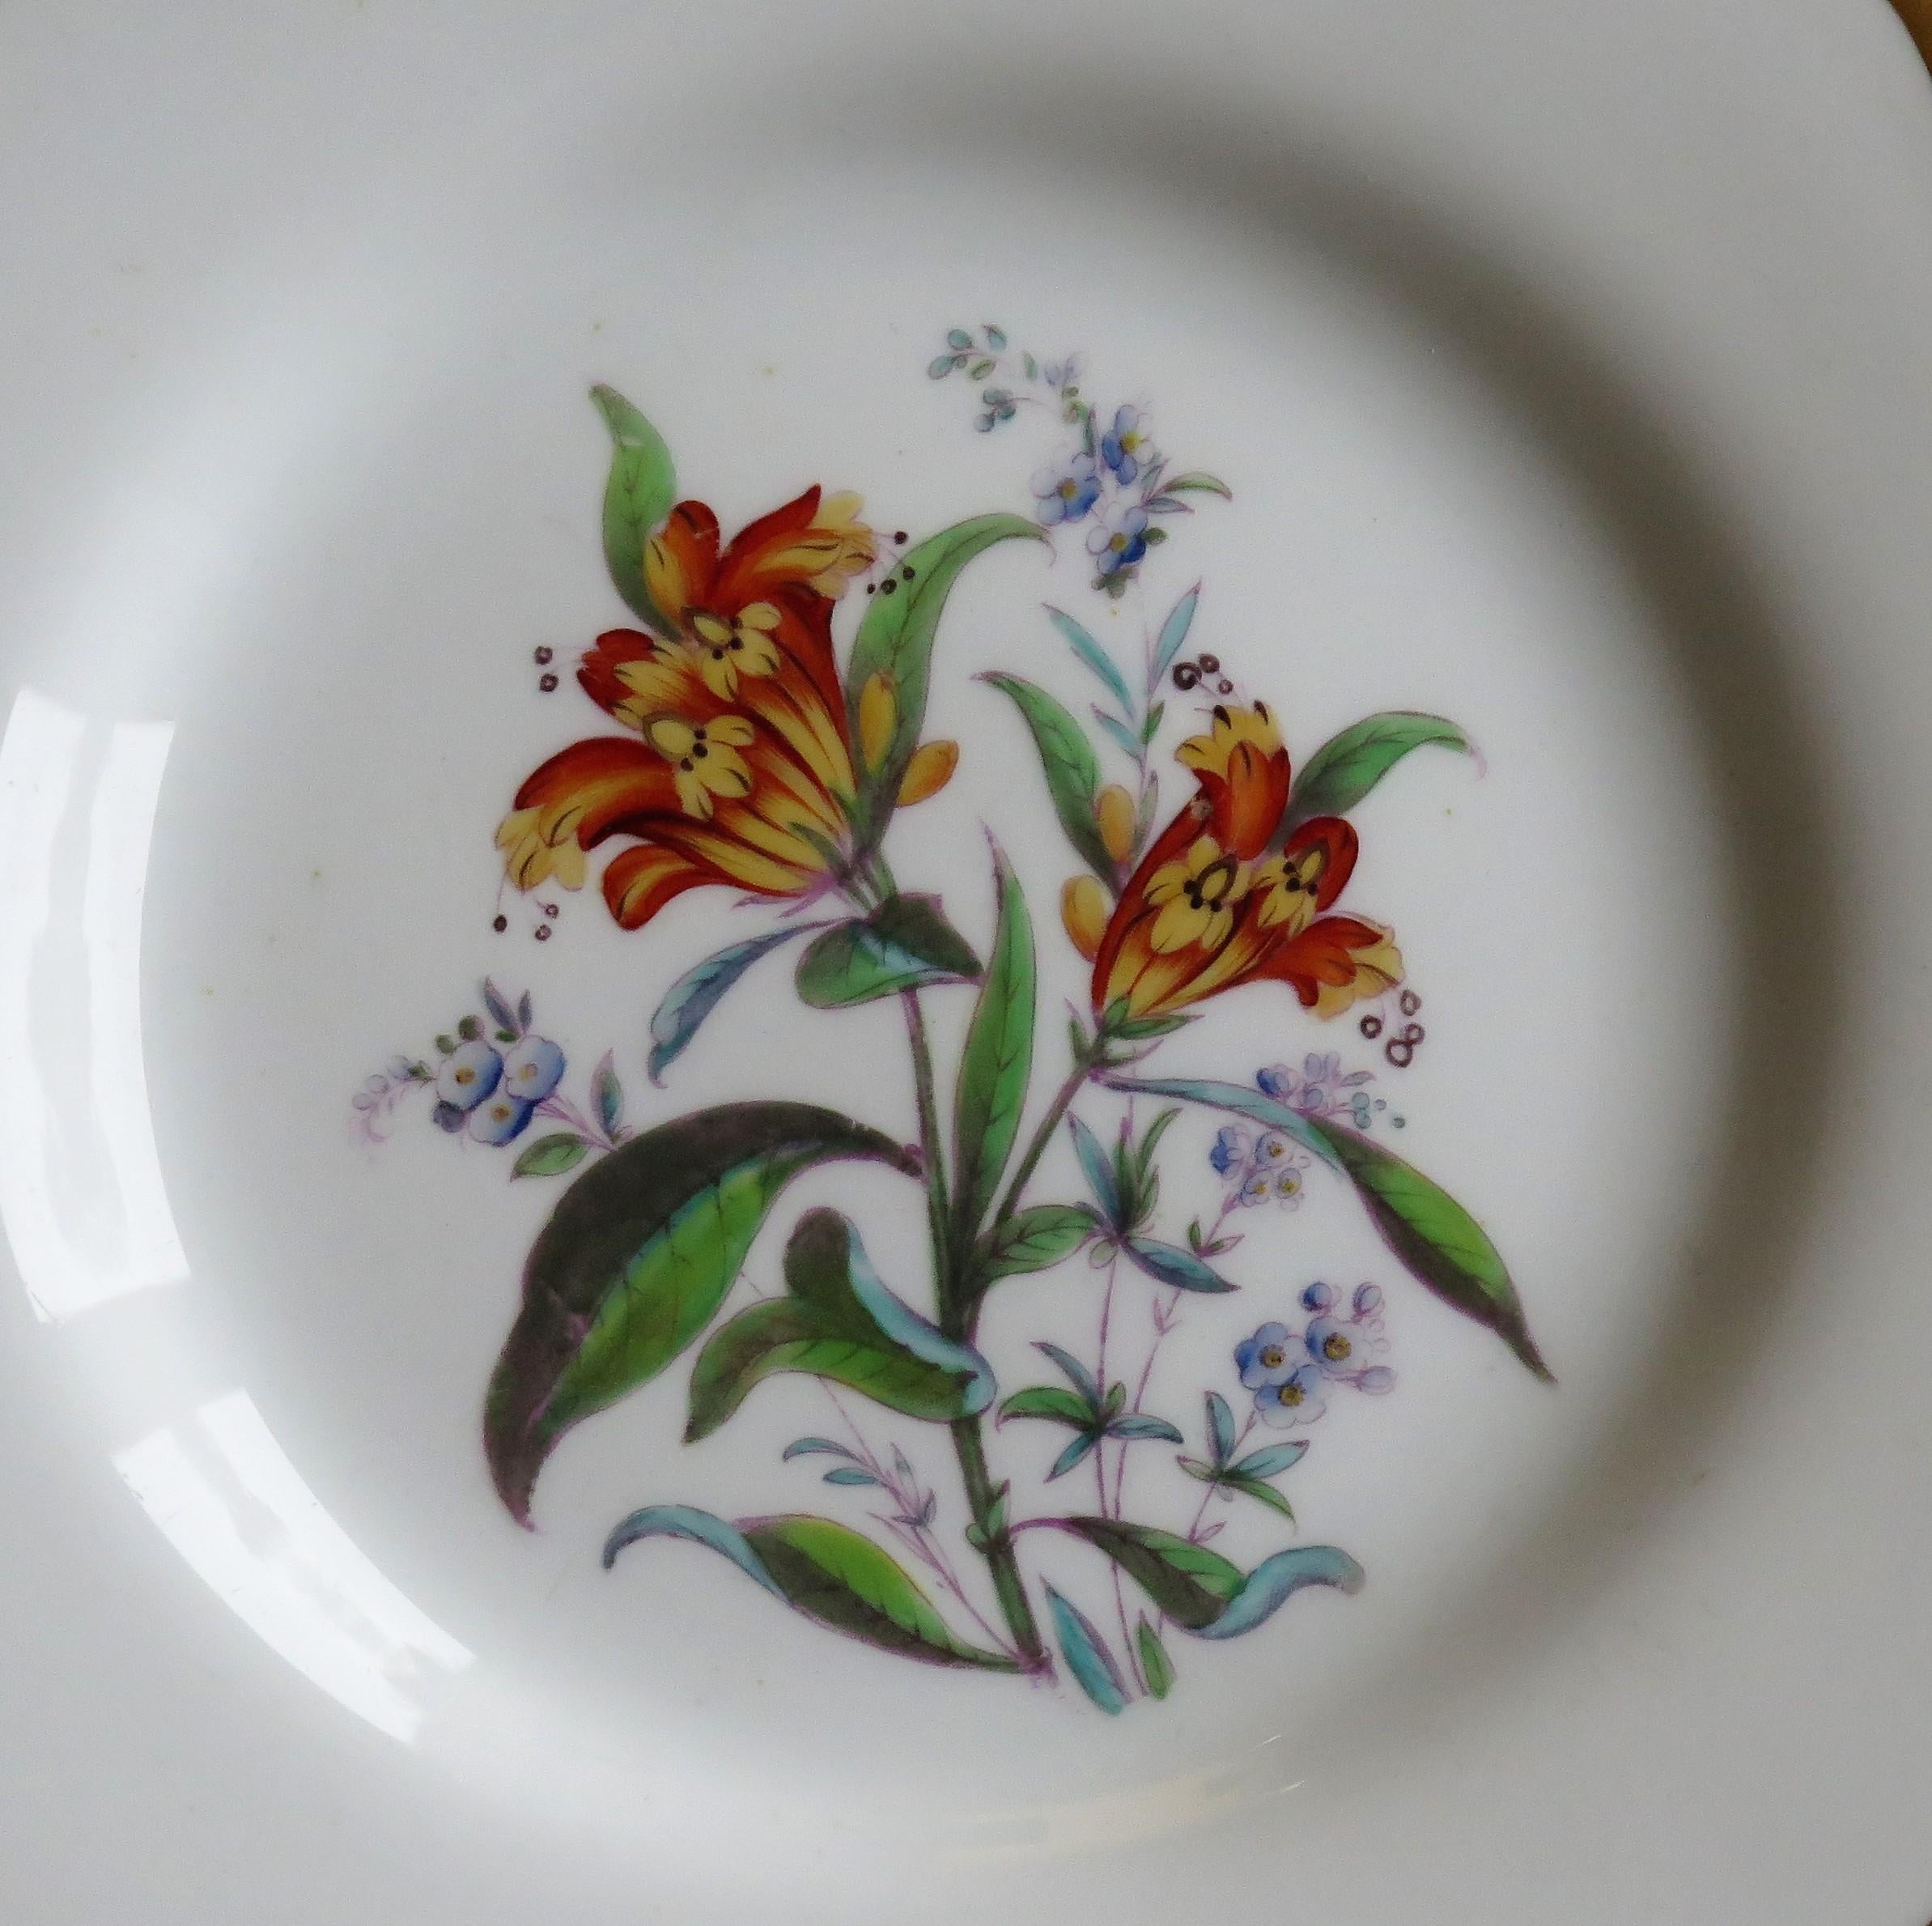 Il s'agit d'une magnifique paire d'assiettes botaniques en porcelaine très décoratives de John Ridgway, de Shelton, Hanley, Staffordshire Potteries, Angleterre, datant de la période Guillaume IV du début du XIXe siècle, vers 1830.

Les assiettes